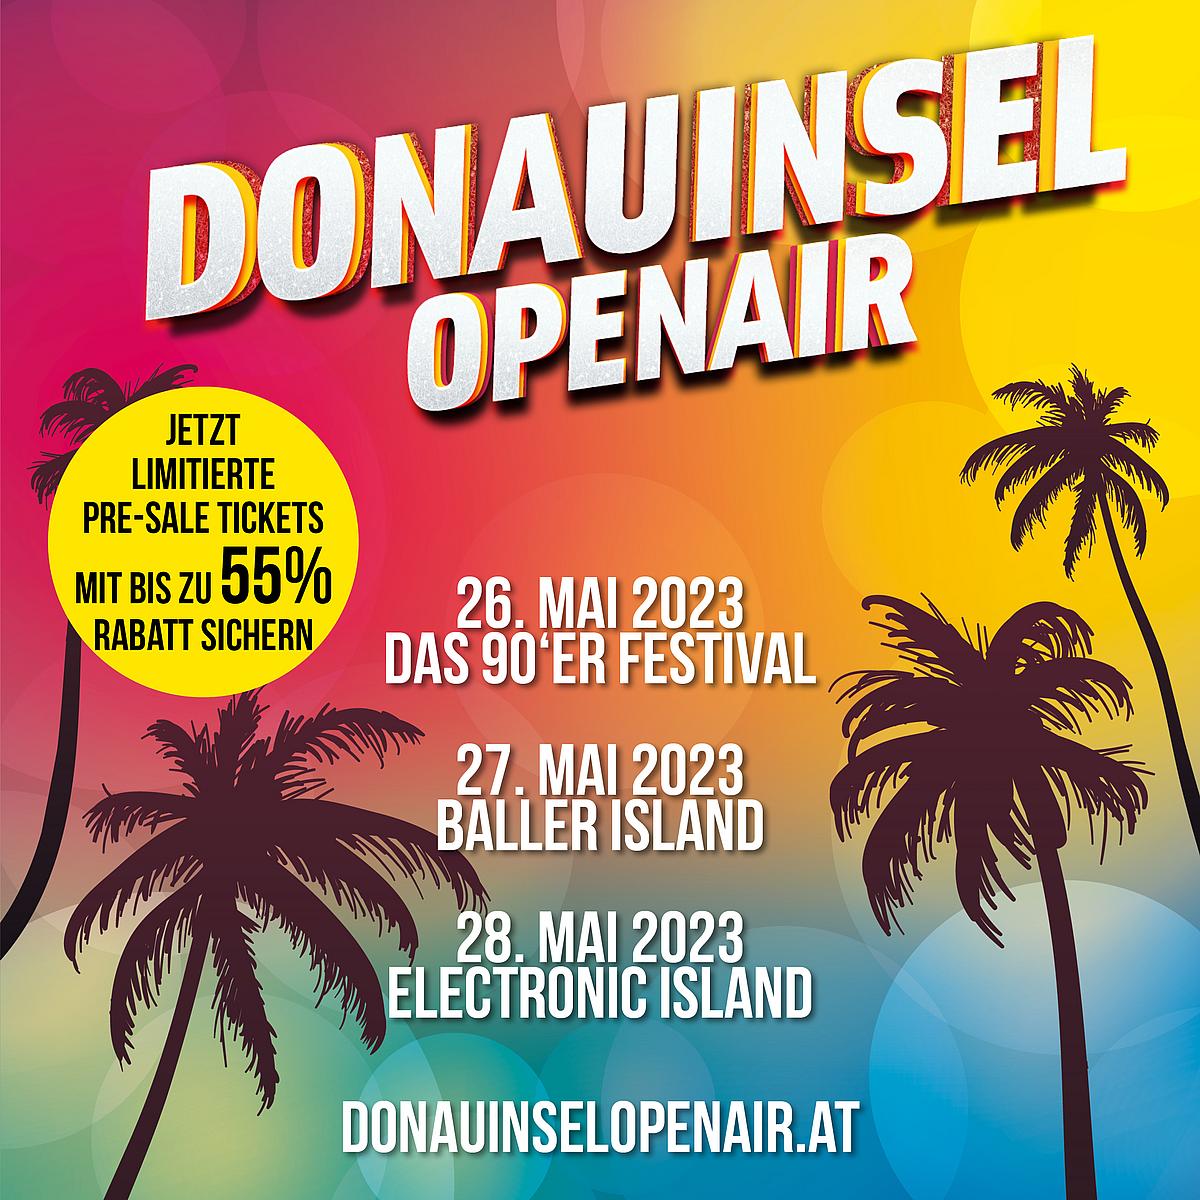 Das Bild zeigt einen Werbebanner für das Donauinsel Open Air Festival.